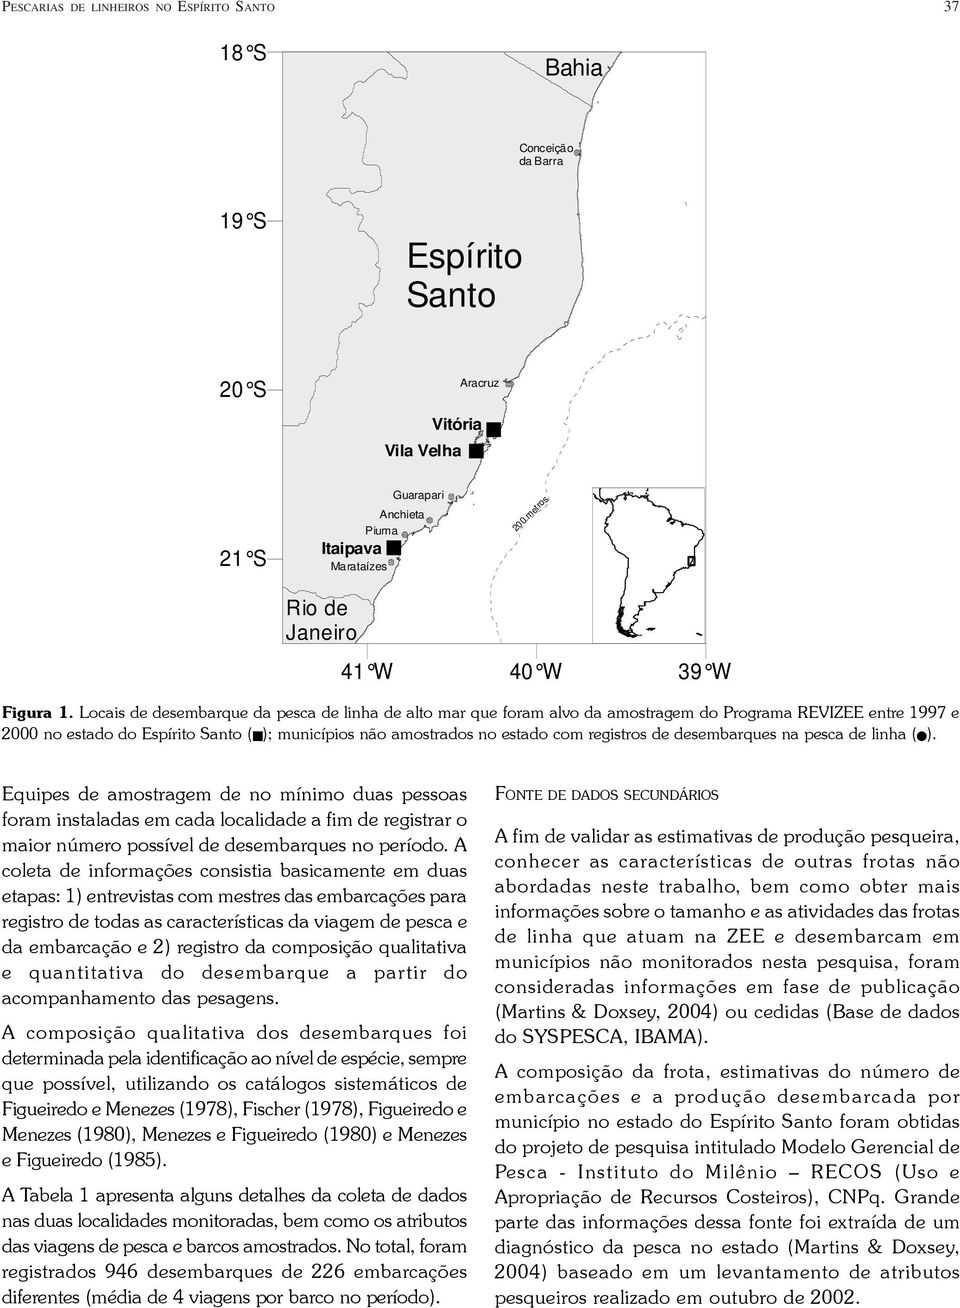 Locais de desembarque da pesca de linha de alto mar que foram alvo da amostragem do Programa REVIZEE entre 1997 e 2 no estado do Espírito Santo ( ); municípios não amostrados no estado com registros